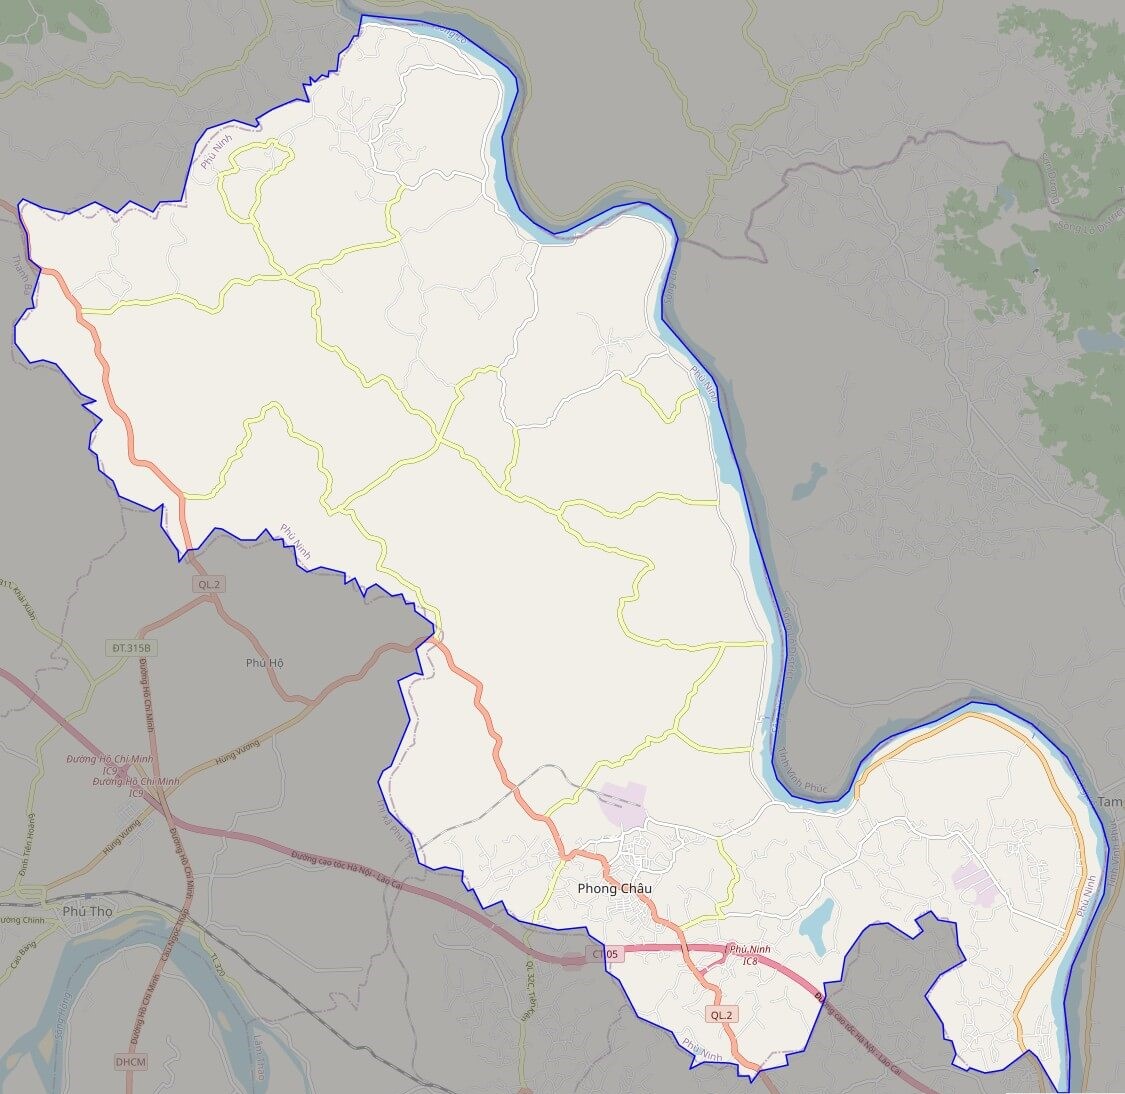 Bản đồ huyện Phù Ninh: Cập nhật bản đồ huyện Phù Ninh để dễ dàng tiếp cận với thông tin địa lý của khu vực này. Bản đồ được thiết kế bằng công nghệ cao, giúp người sử dụng dễ dàng tìm kiếm thông tin và điều hướng đến các địa điểm và địa danh quan trọng trong huyện.